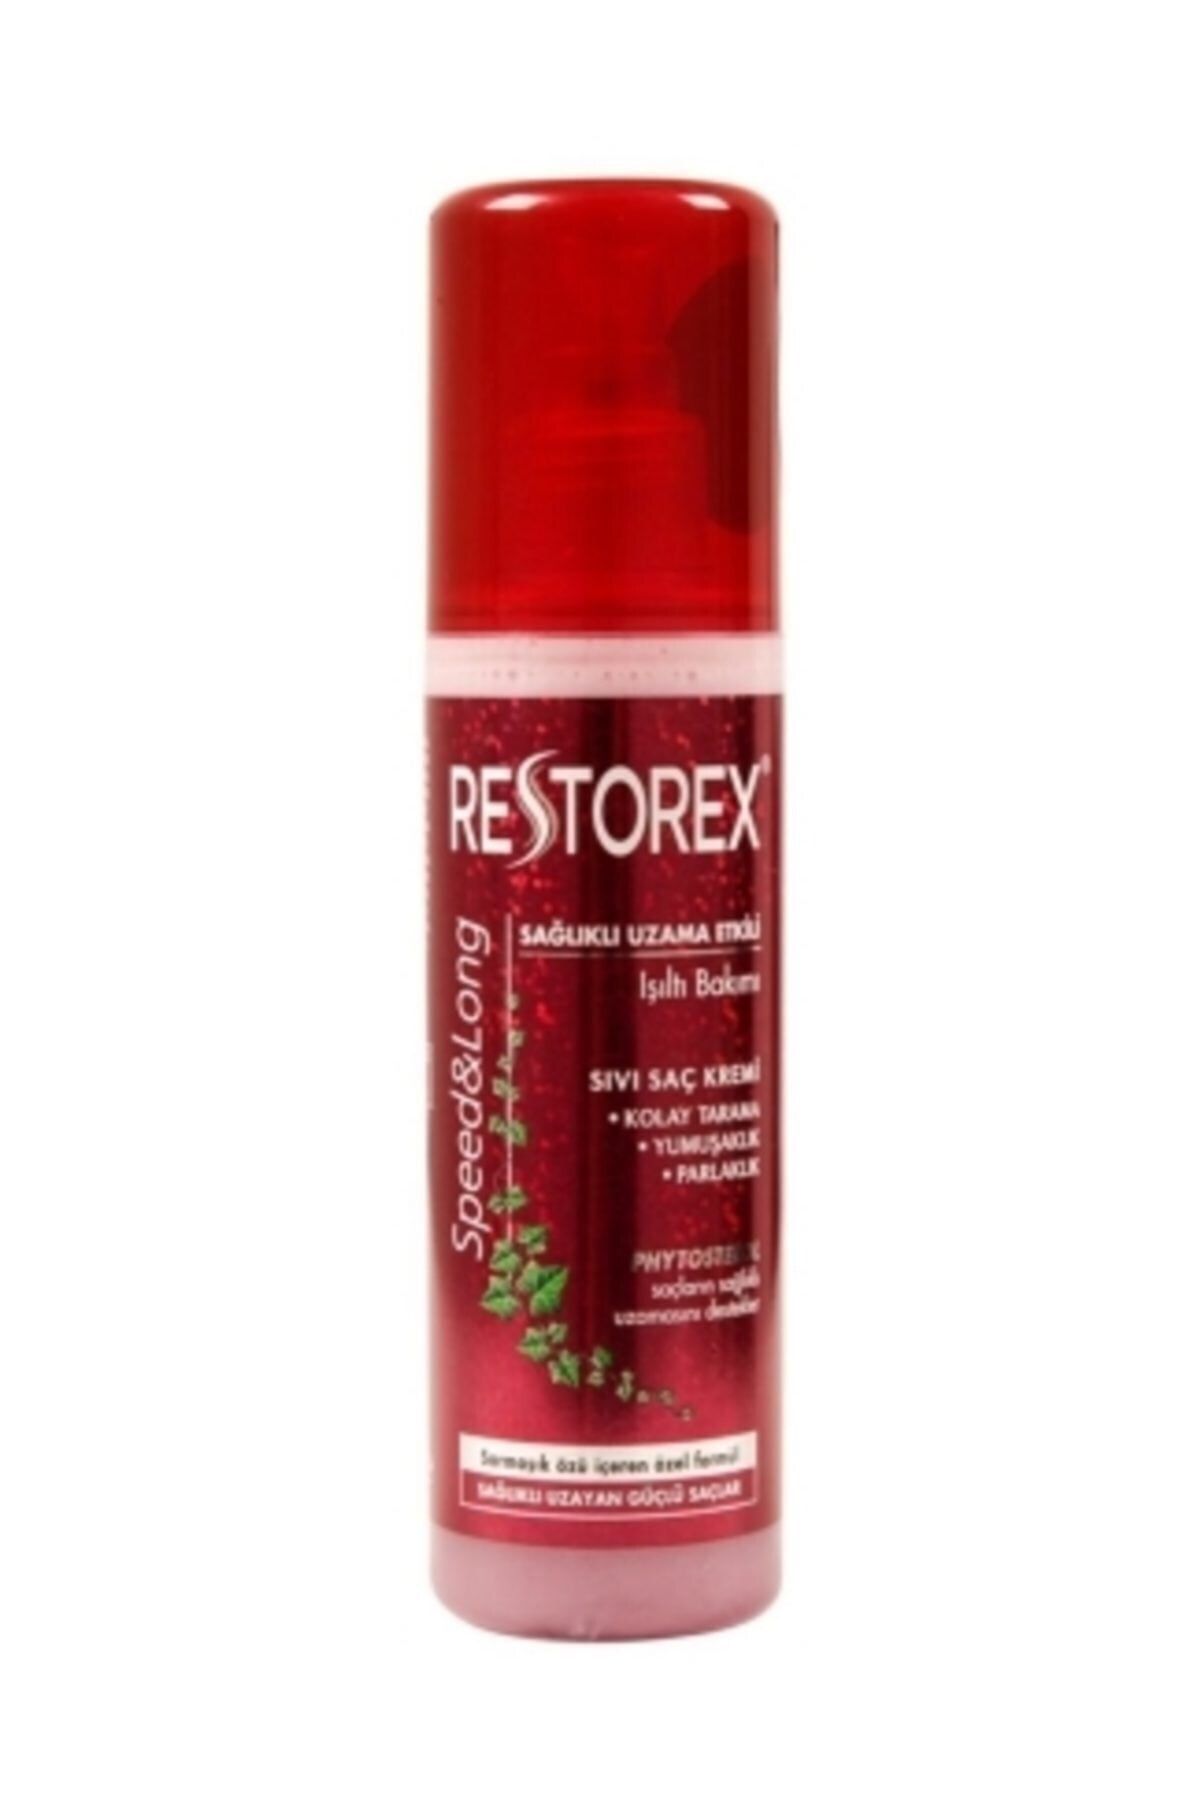 Restorex Sağlıklı Uzama Etkili Işıltılı Bakım Saç Kremi 200 Ml